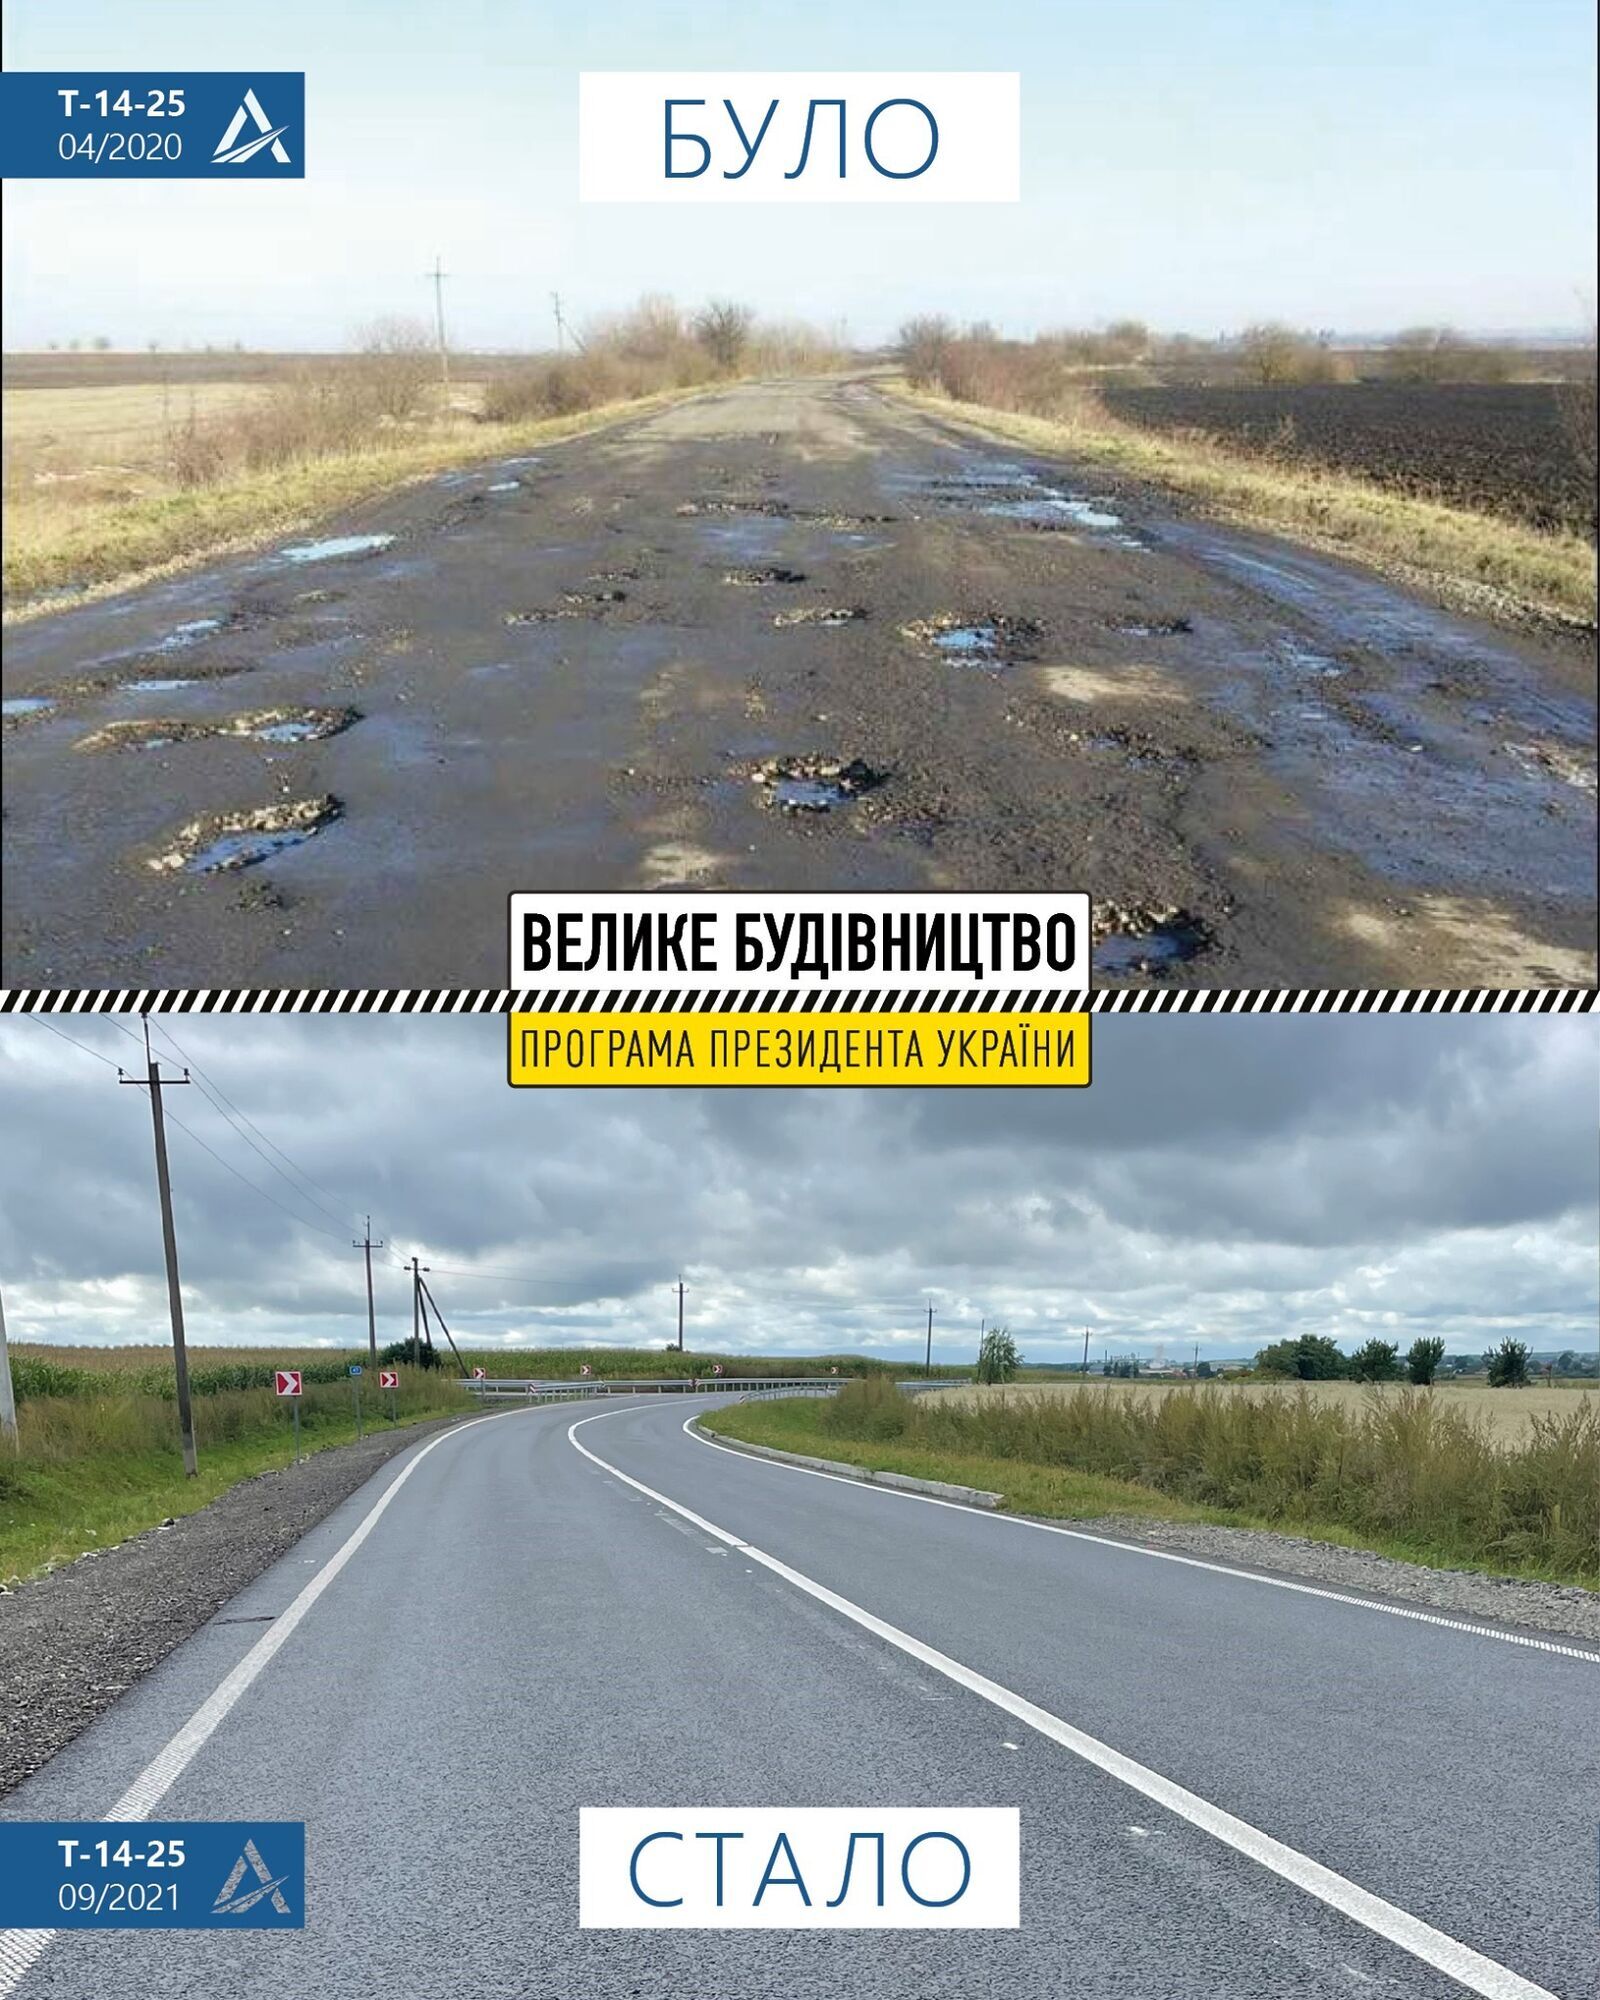 На Львовщине дорожники полностью уложили новое покрытие на 8-километровом участке между Городком и Повитно